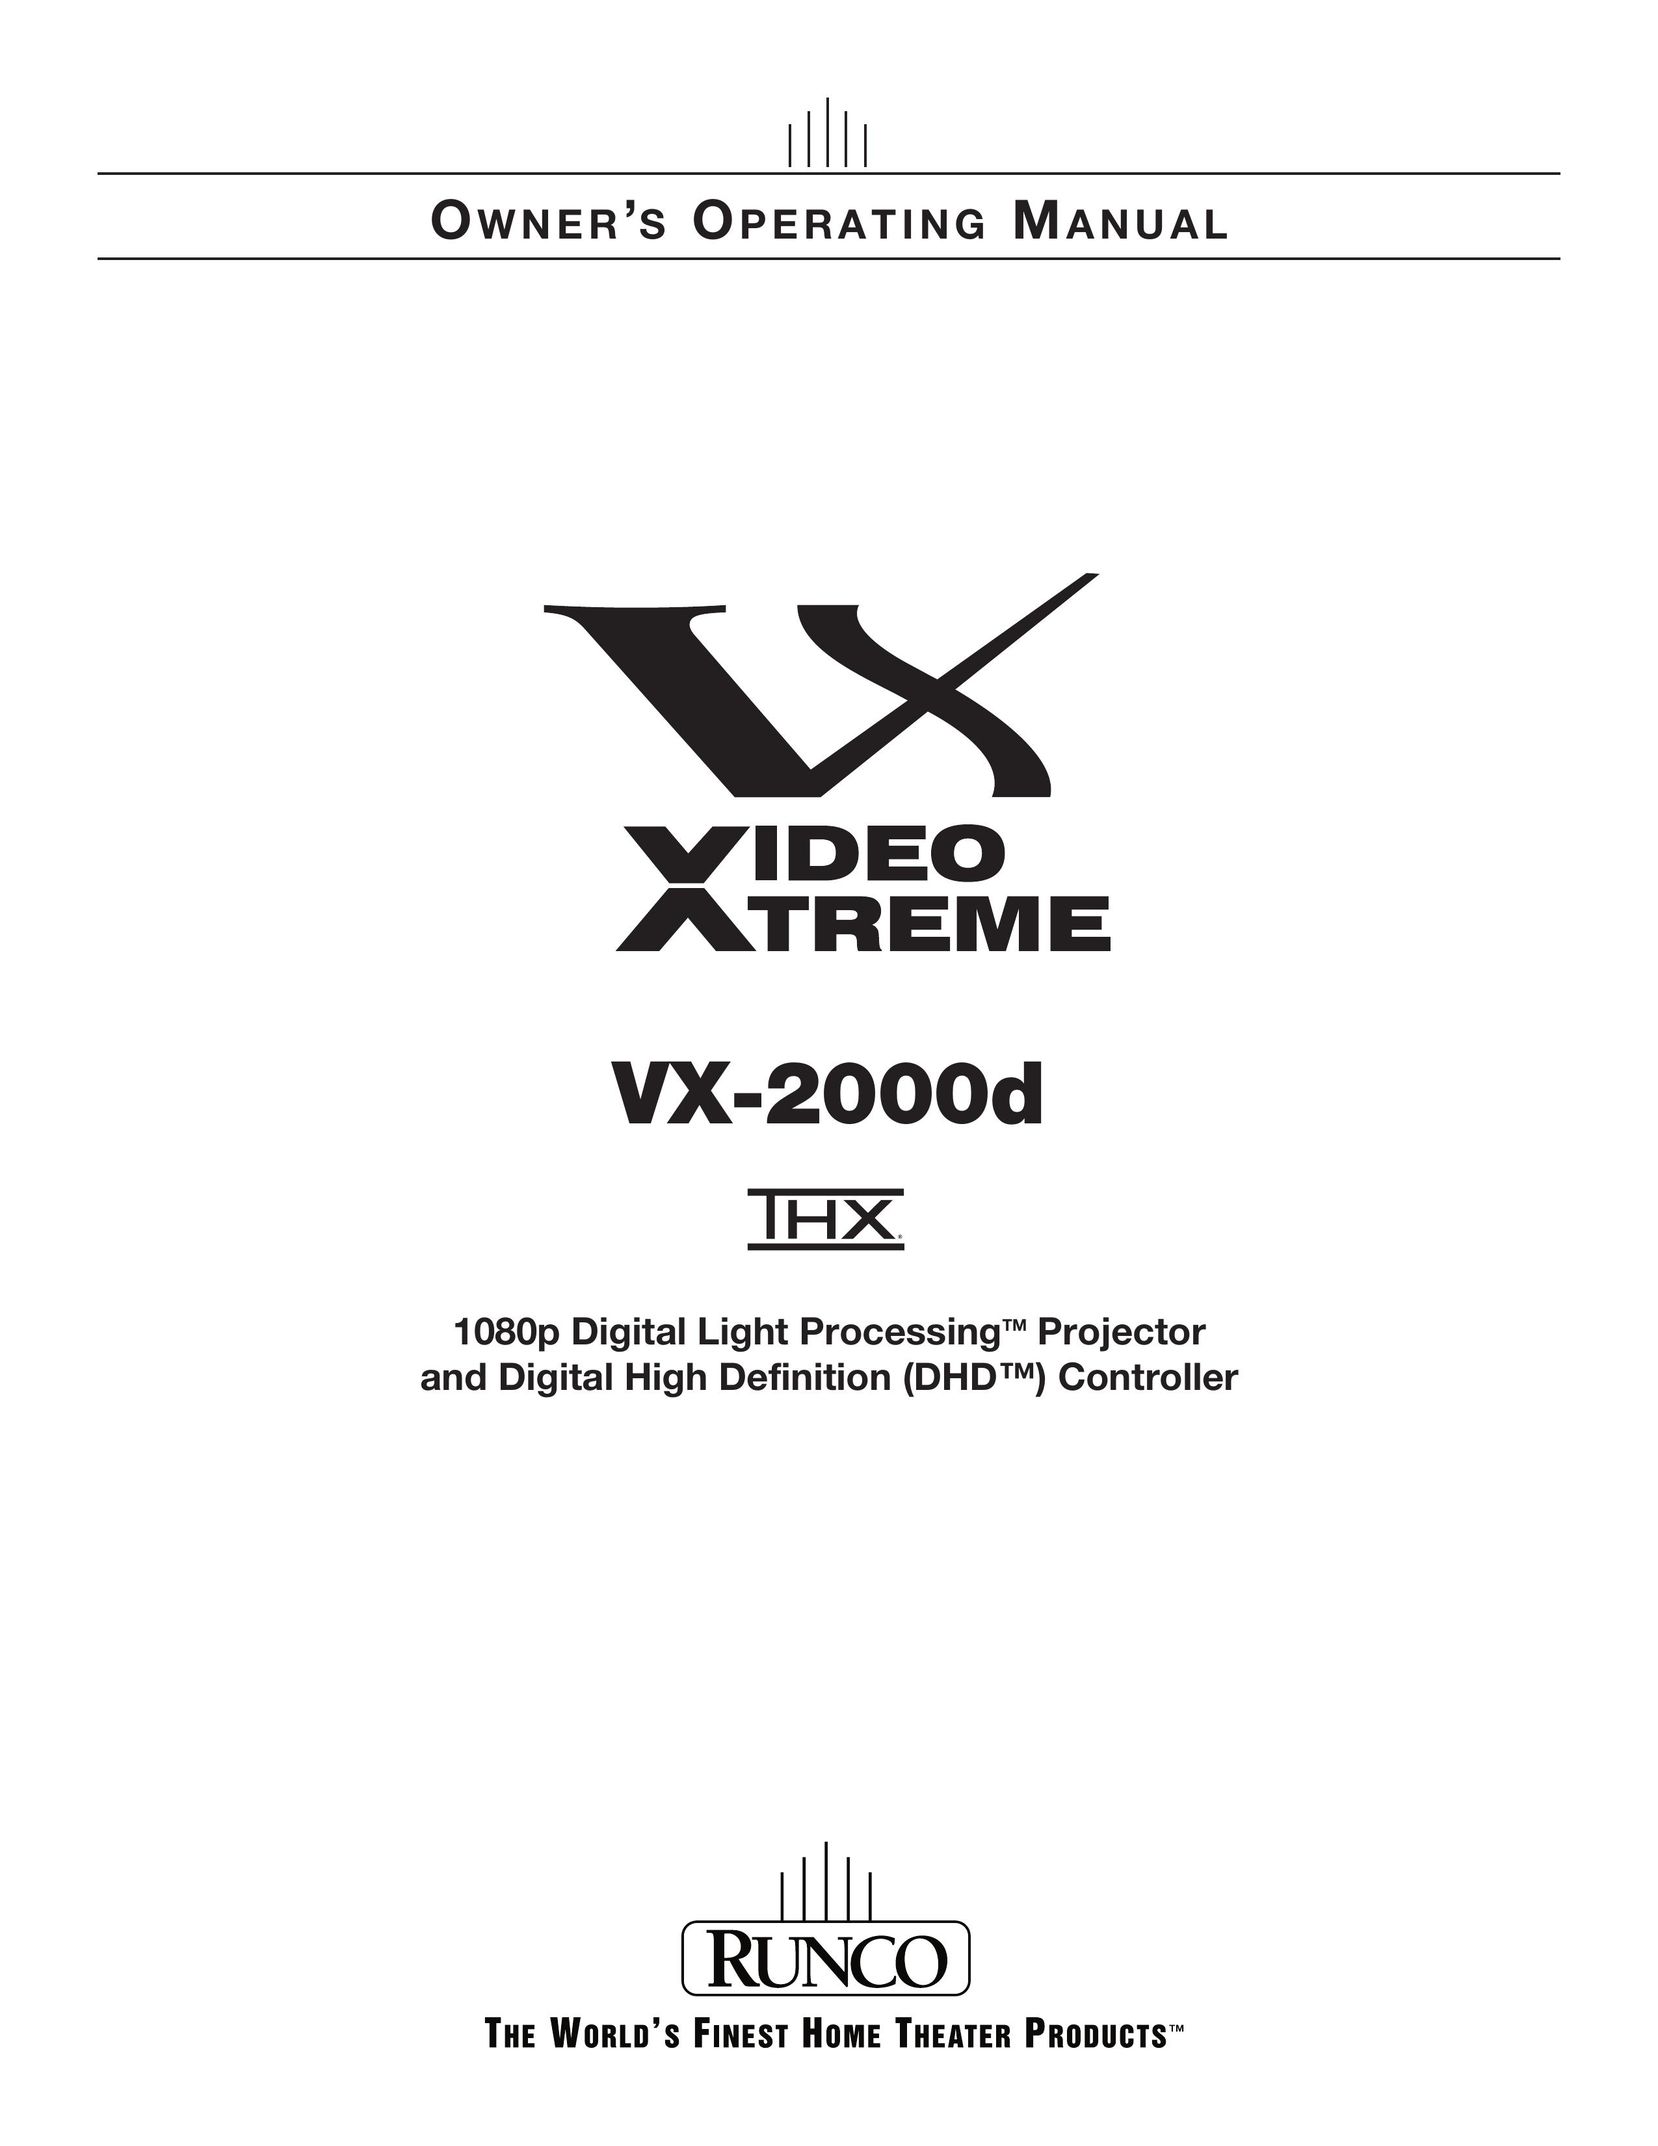 Runco VX-2000D Projector User Manual